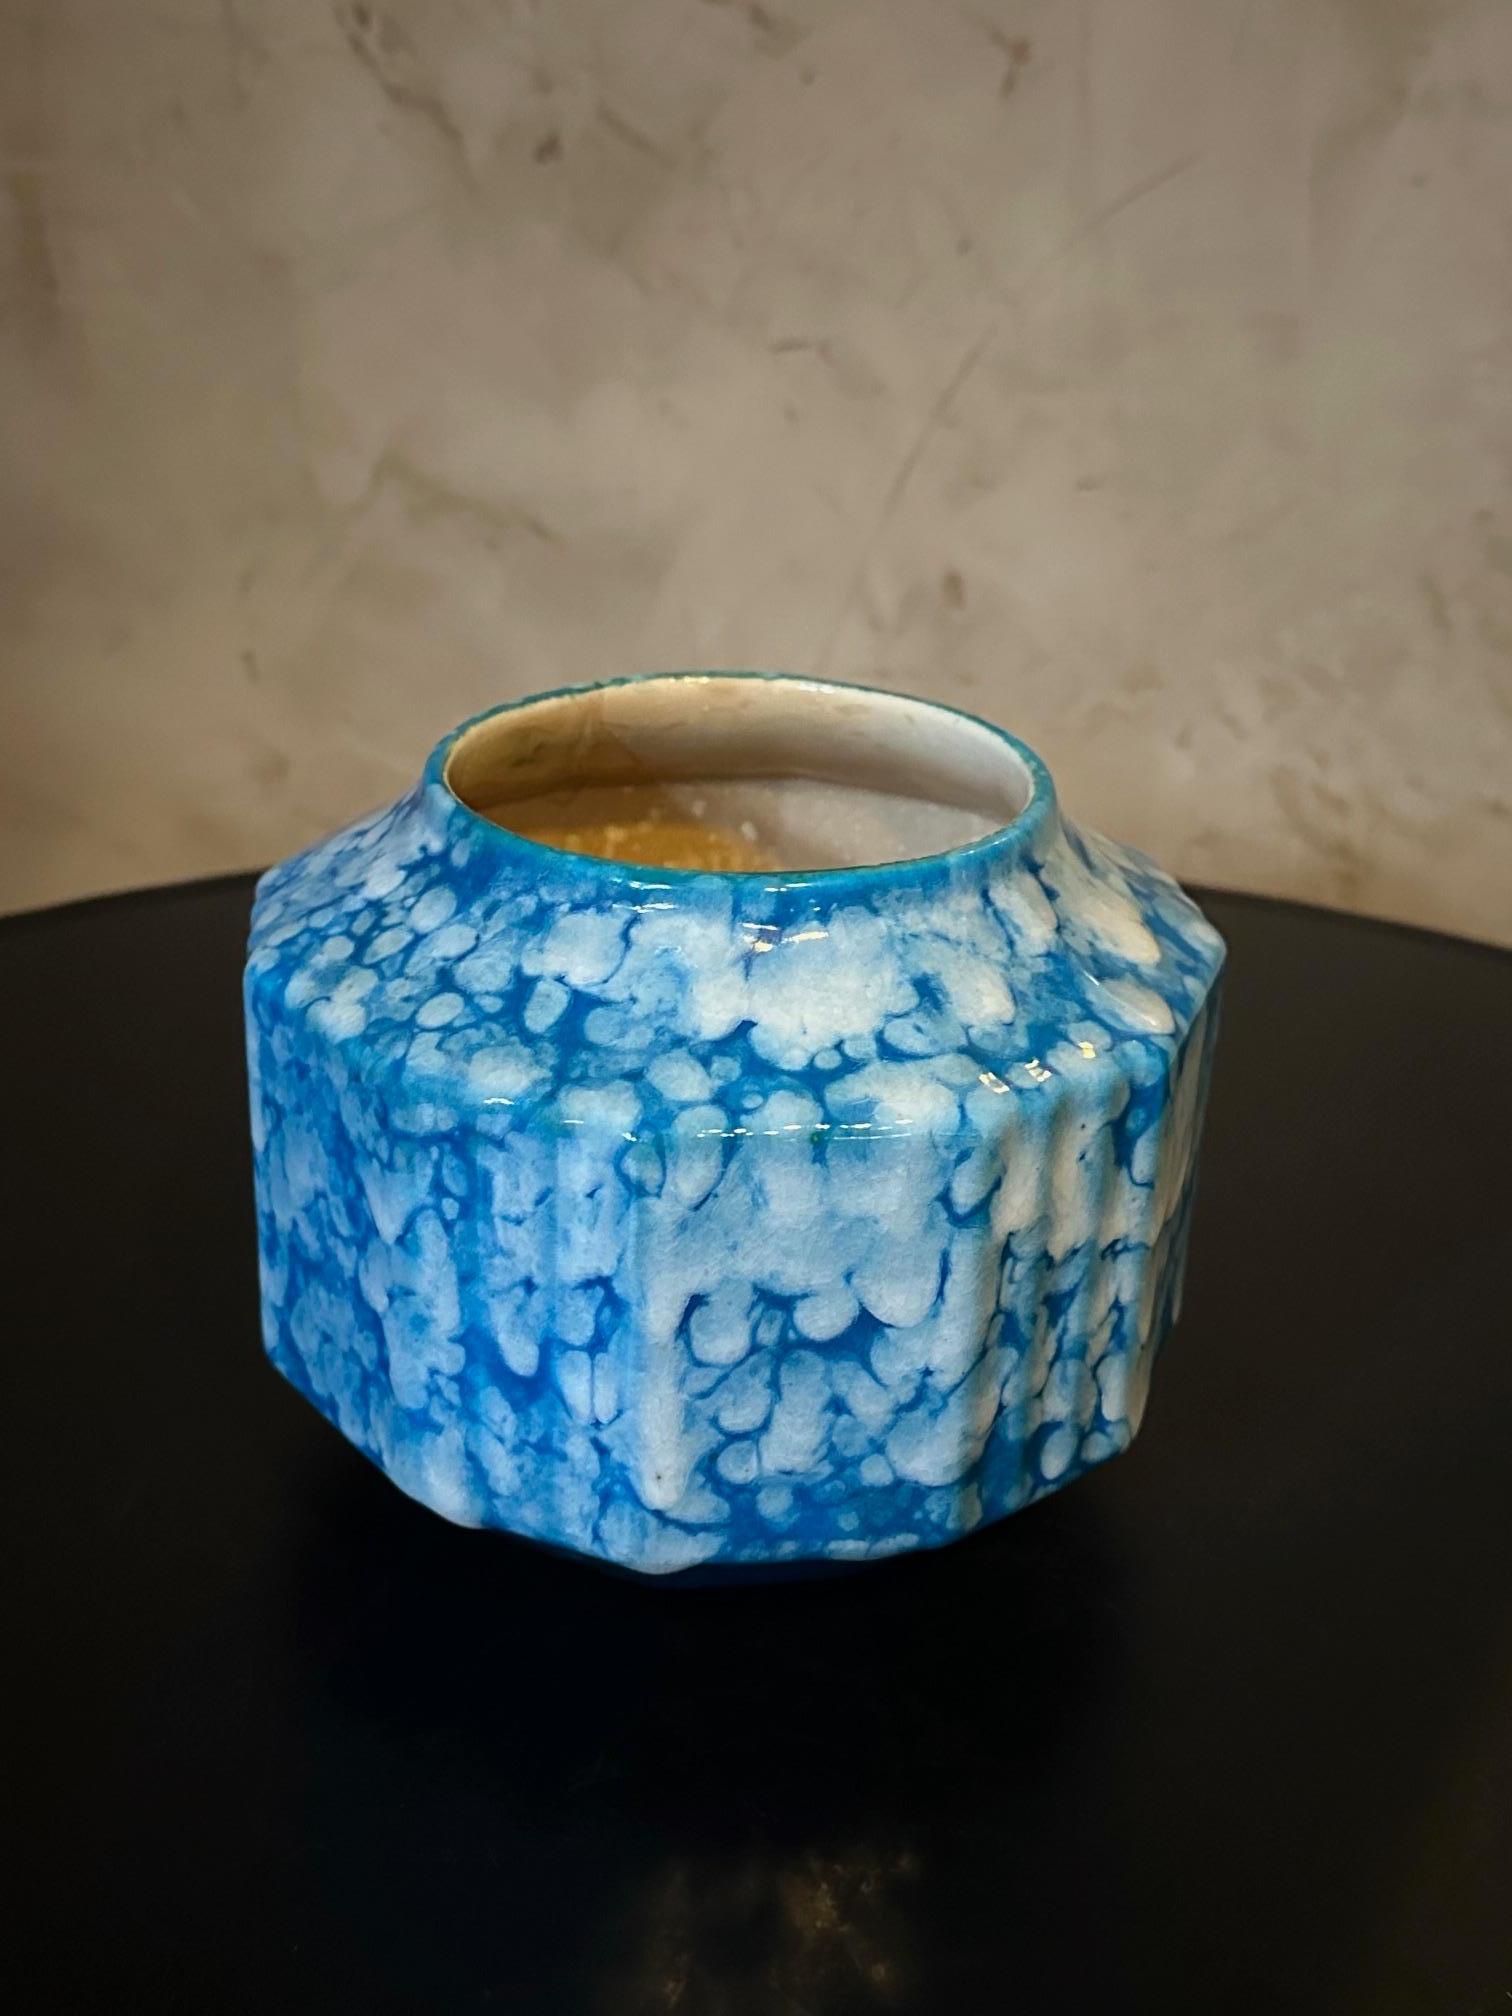 Très beau vase art déco signé Boch la Louviers en faïence bleue mouchetée.
Très bon état. 